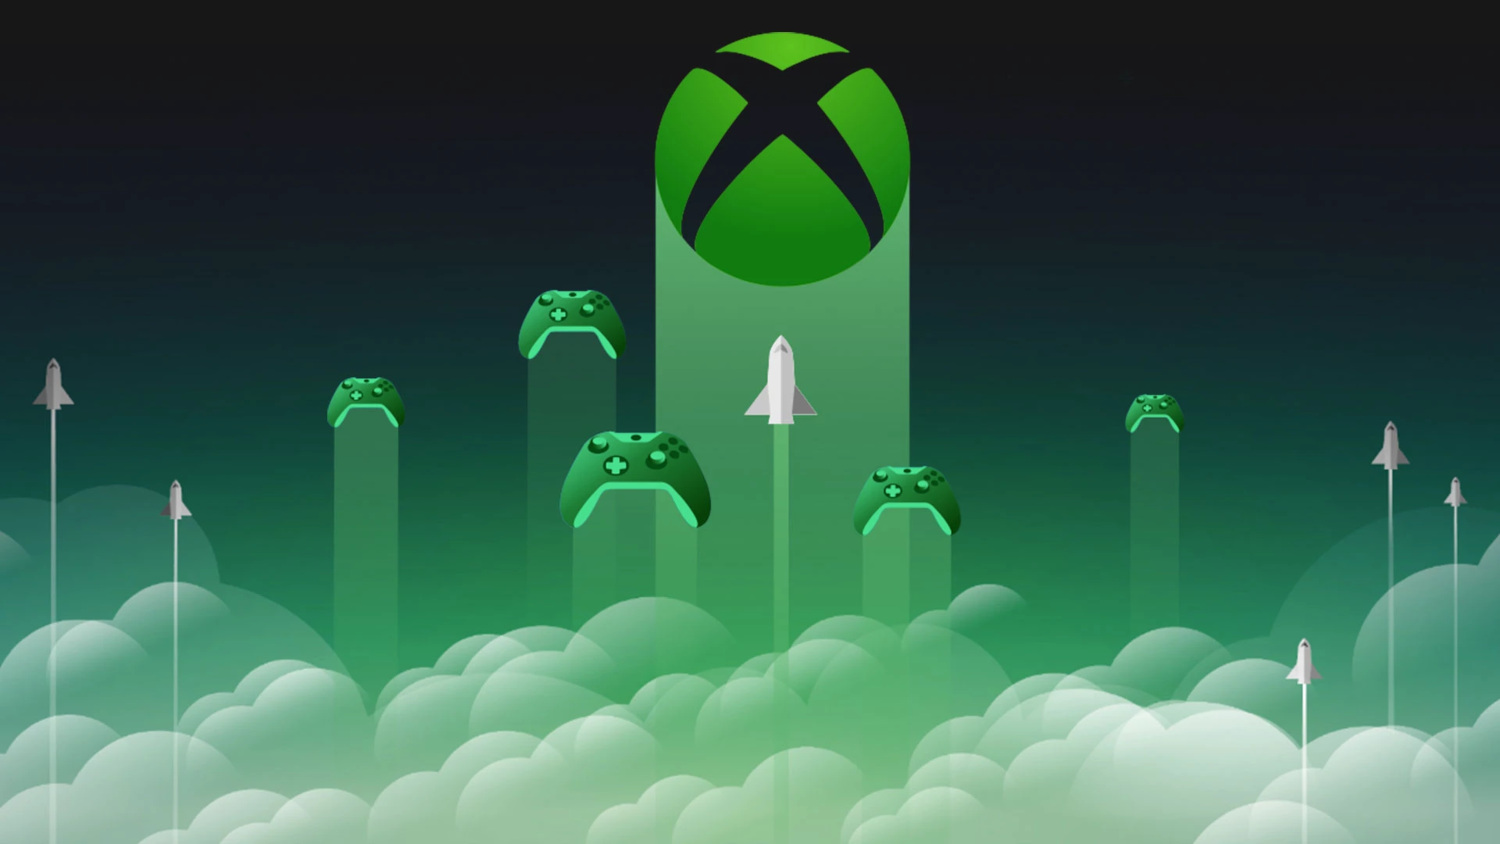 Cloud Gaming chegará aos consoles Xbox Series X